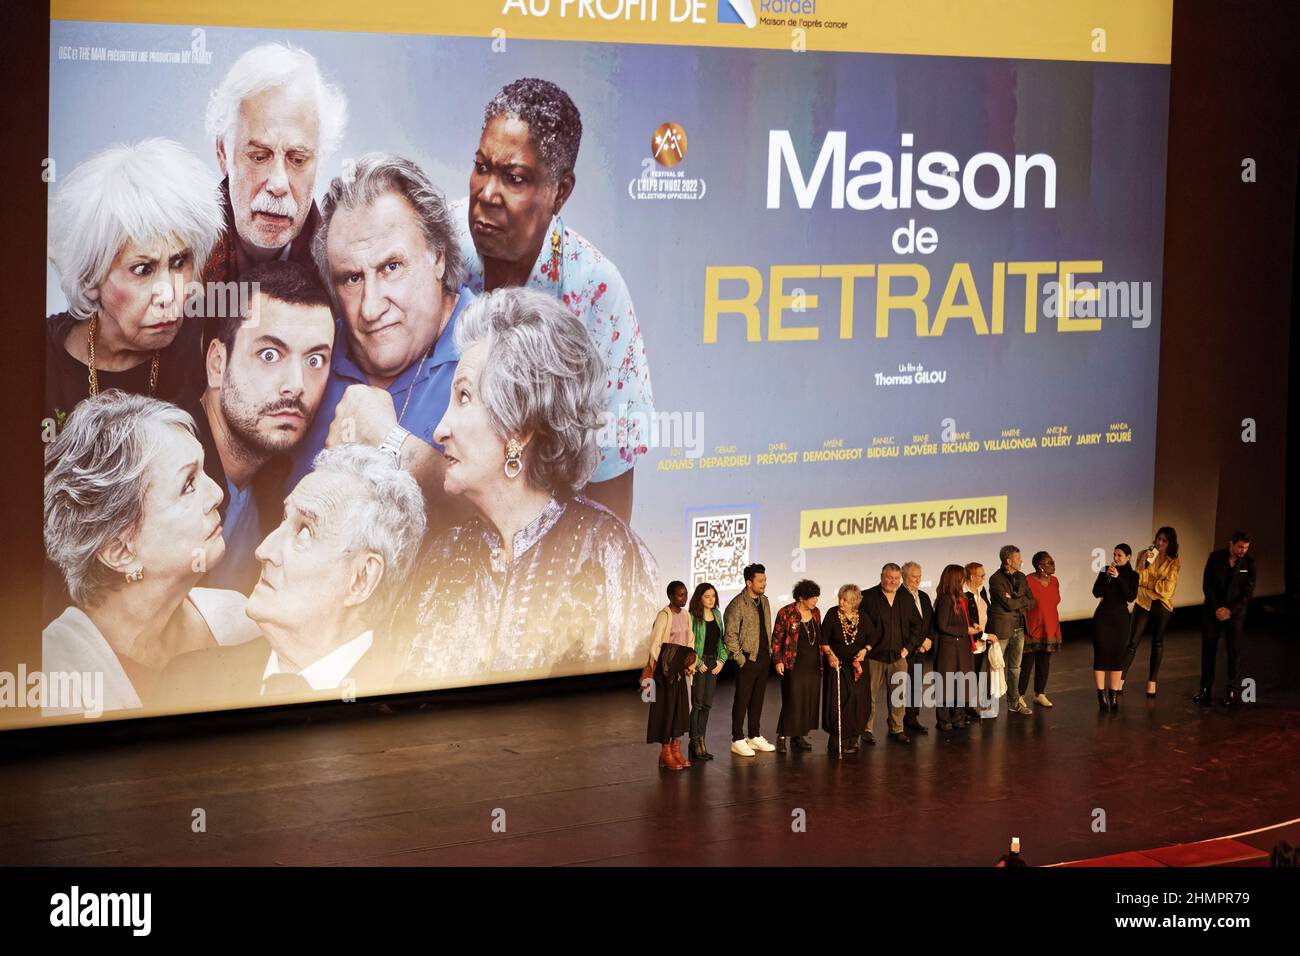 Paris, France. 10th Feb, 2022. MAISON DE RETRAITE premiere by Thomas Gilou at Le Grand Rex on February 10, 2022 in Paris, France. Stock Photo